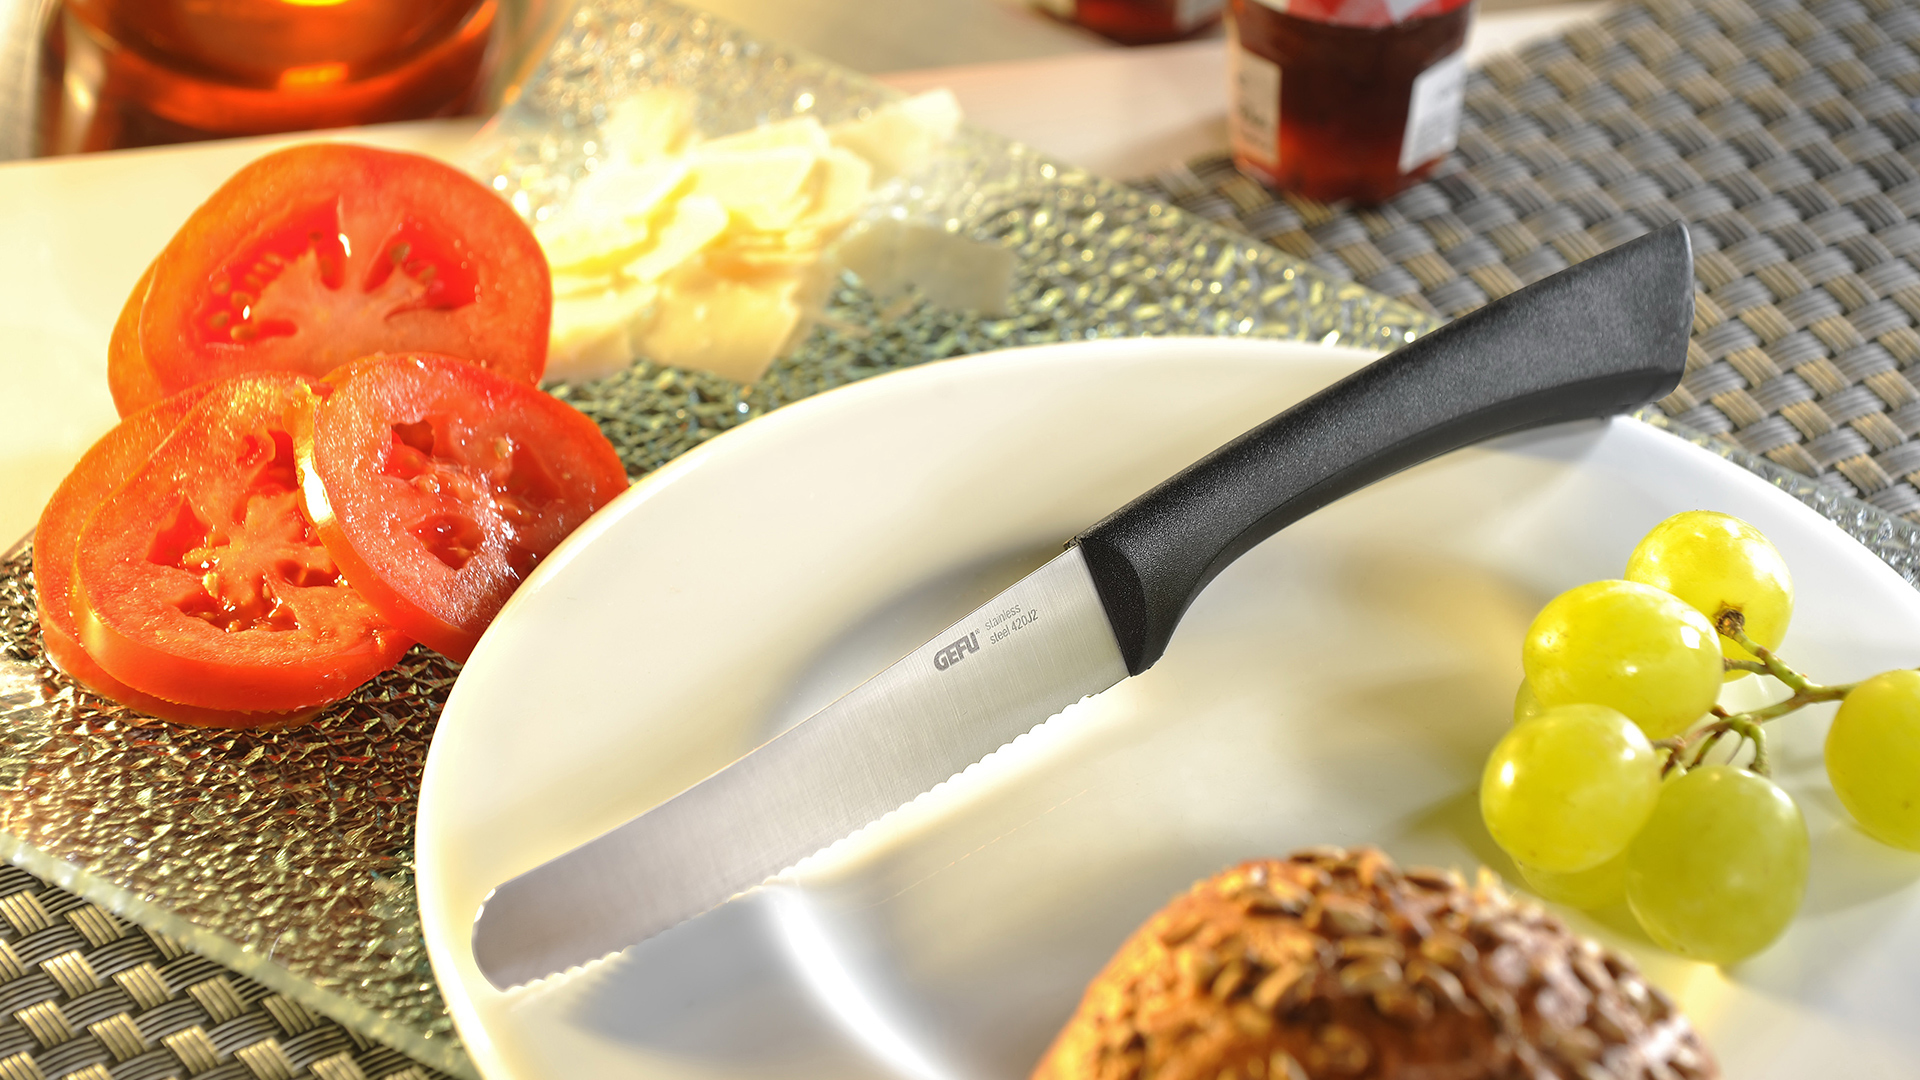 Нож кухонный универсальный Gefu 11см, сталь нержавеющая